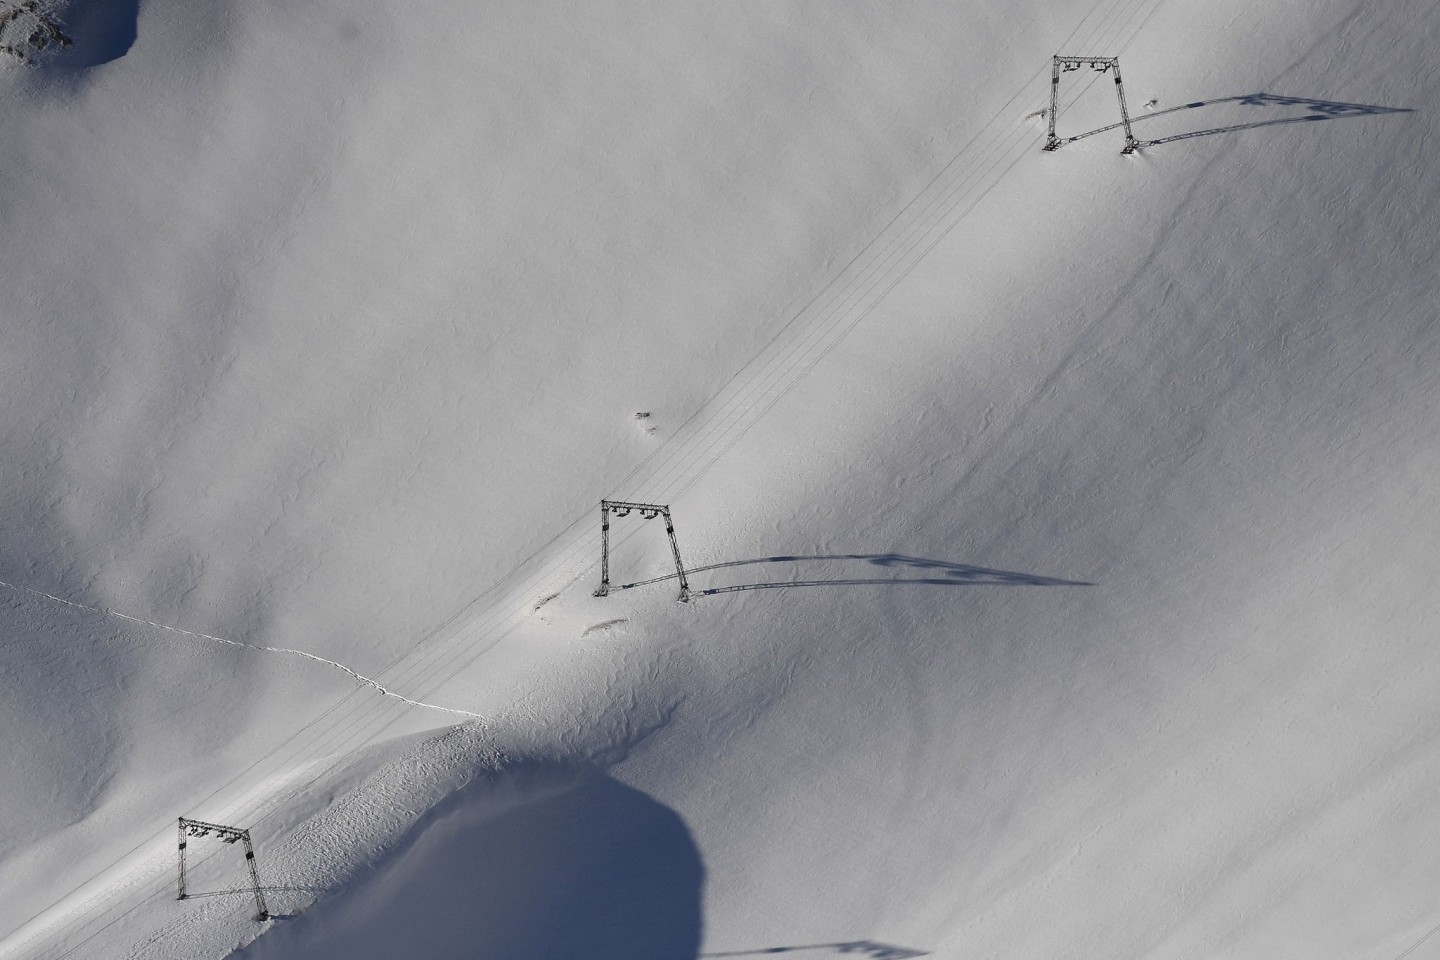 Deutschlands höchstgelegenes Skigebiet an der Zugspitze startet den Wintersportbetrieb.